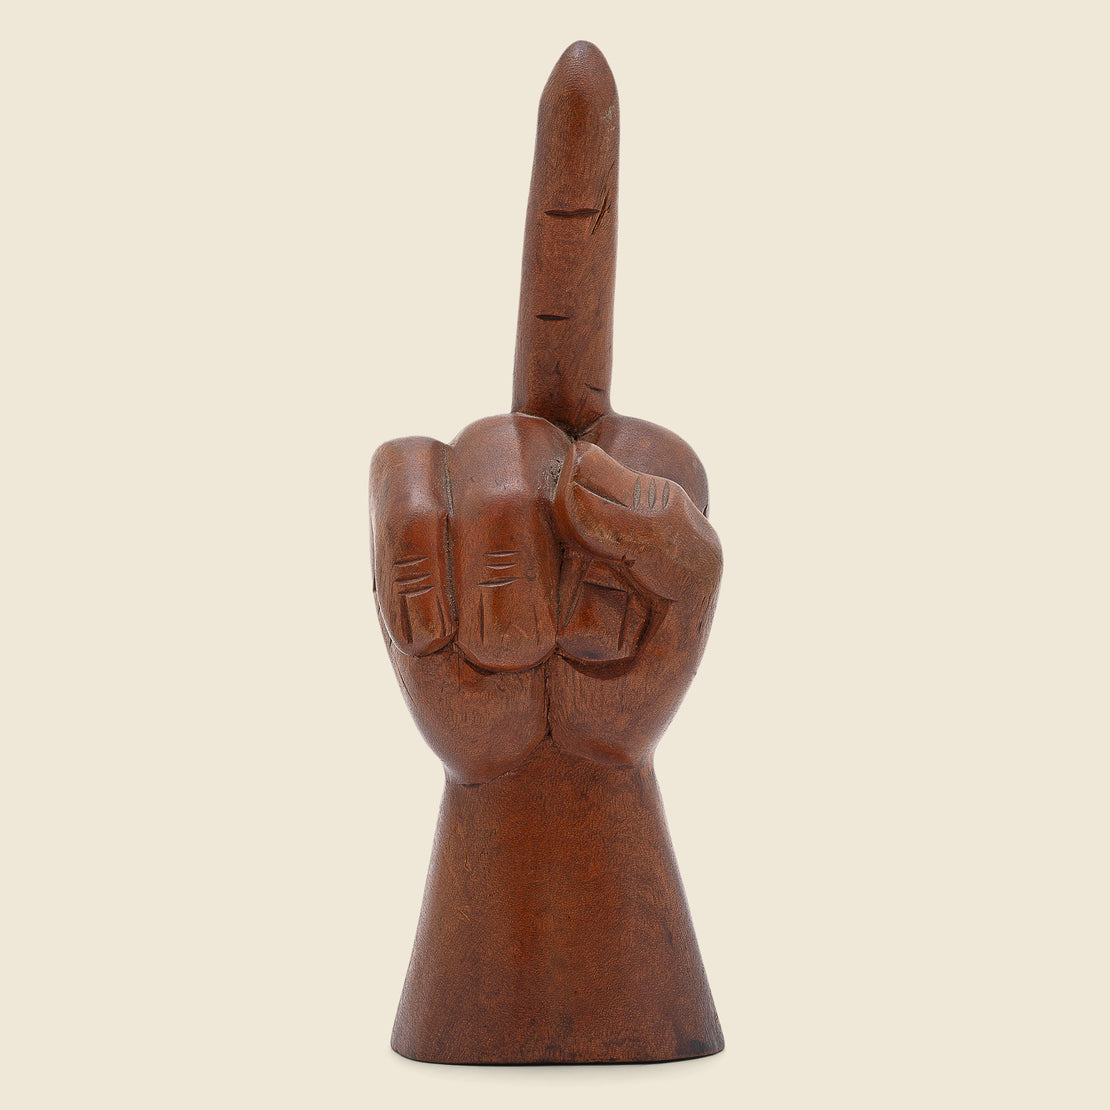 Vintage Hand-Carved Middle Finger Sculpture